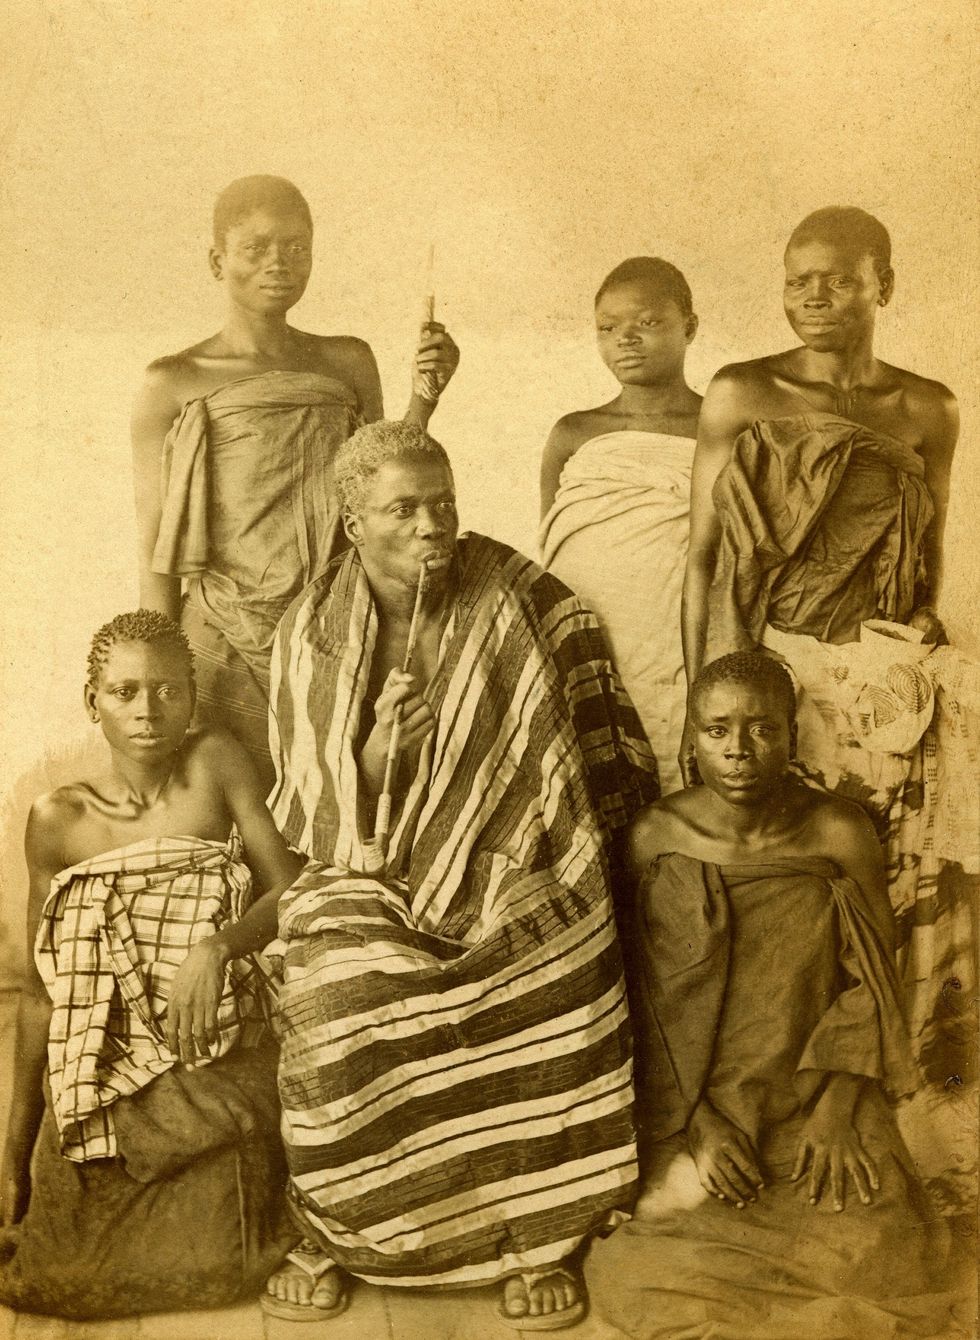 Behanzin de laatste koning van Dahomey met zijn familieleden in 1894 Zijn voorganger had ingestemd met de aanwijzing van de stad Cotonou tot Frans protectoraat maar Behanzin was een felle tegenstander van de kolonisatie en deed een noodlottige laatste poging om een eind te maken aan de Europese bemoeienis